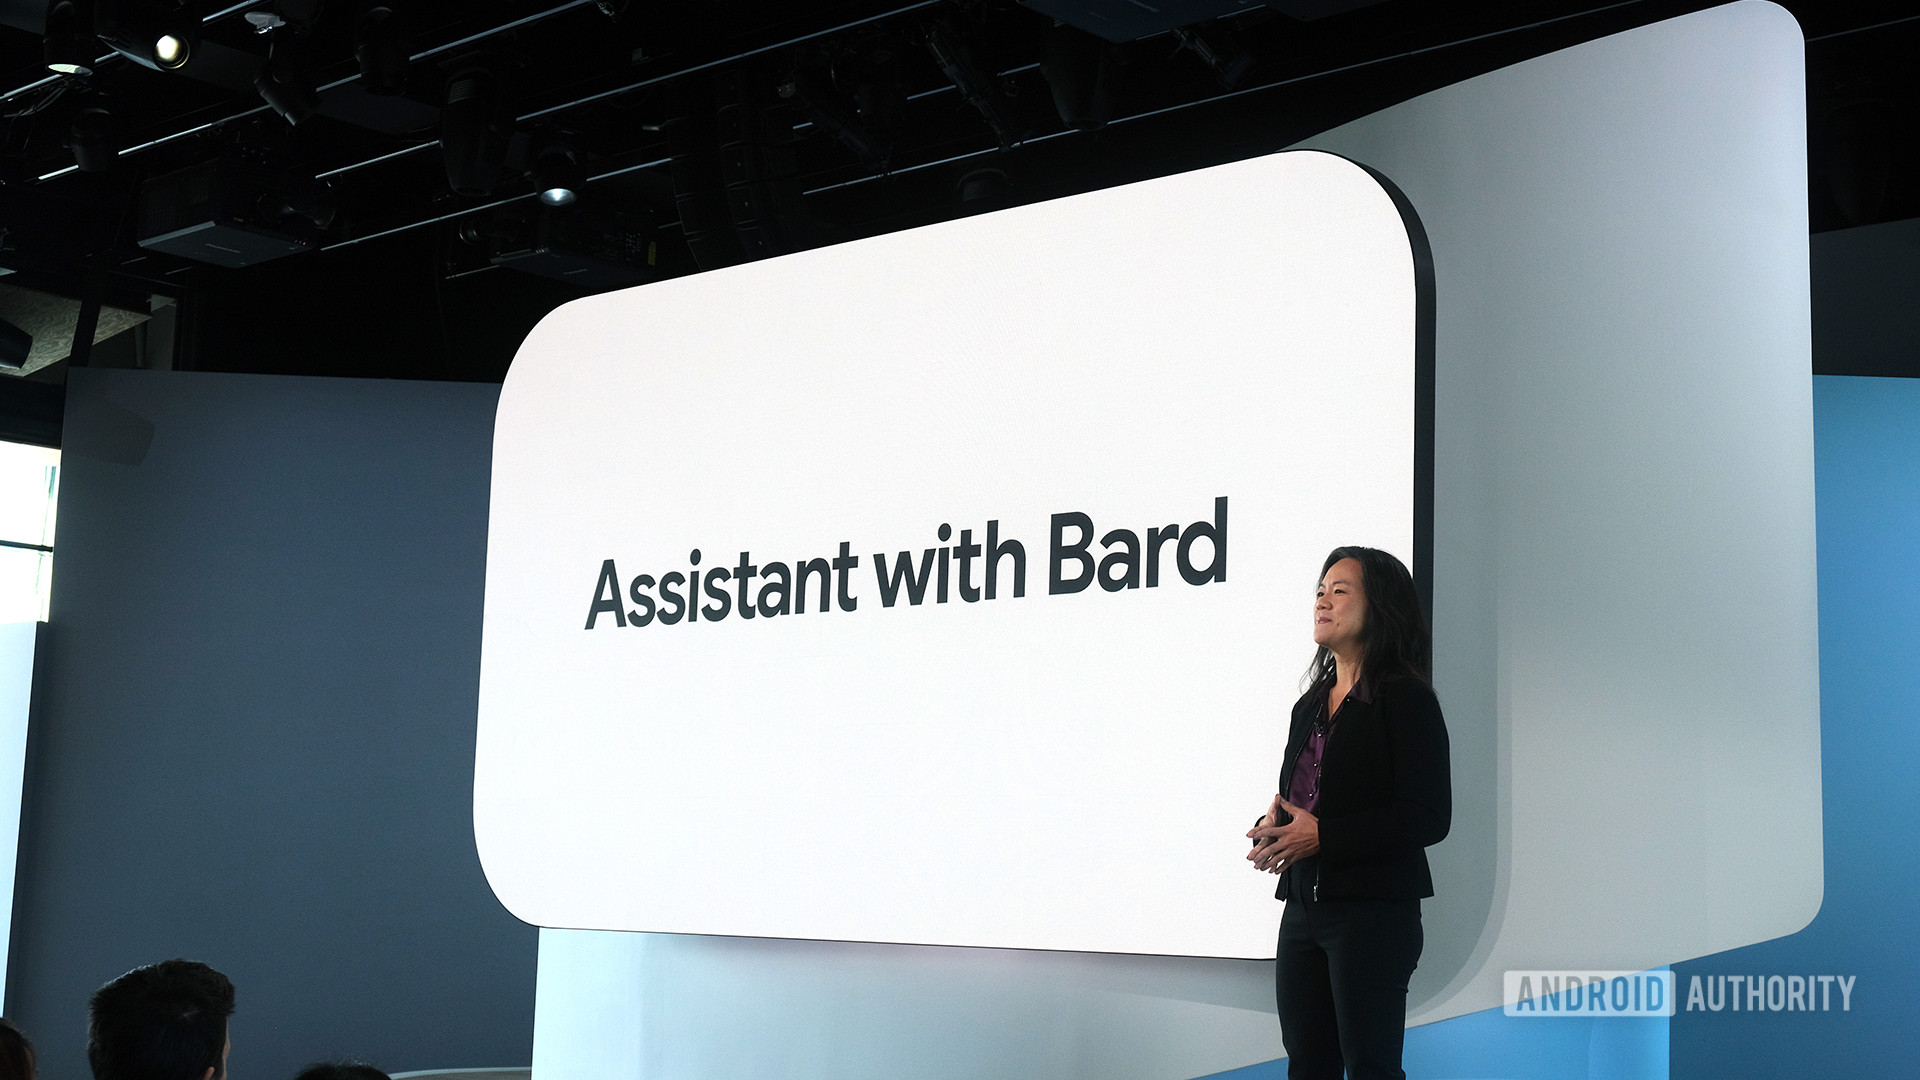 Así se verá el Asistente de Google con Bard en Android